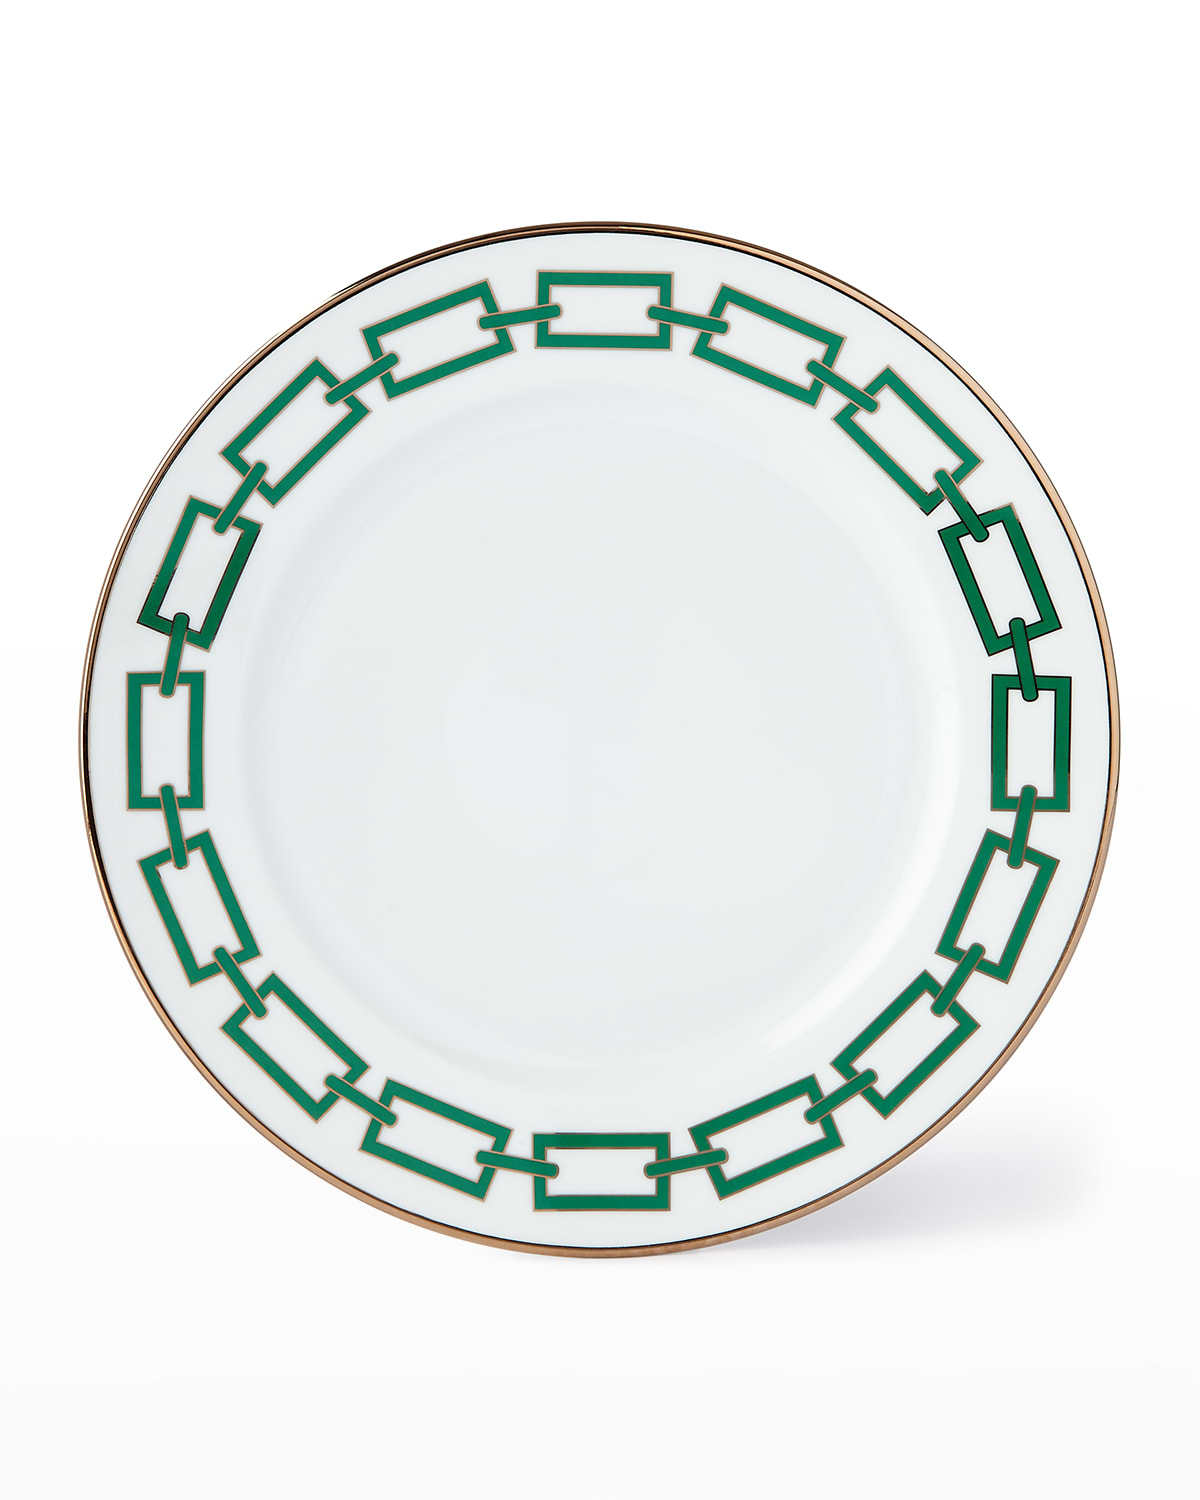 Cantene Green Dinner Plate